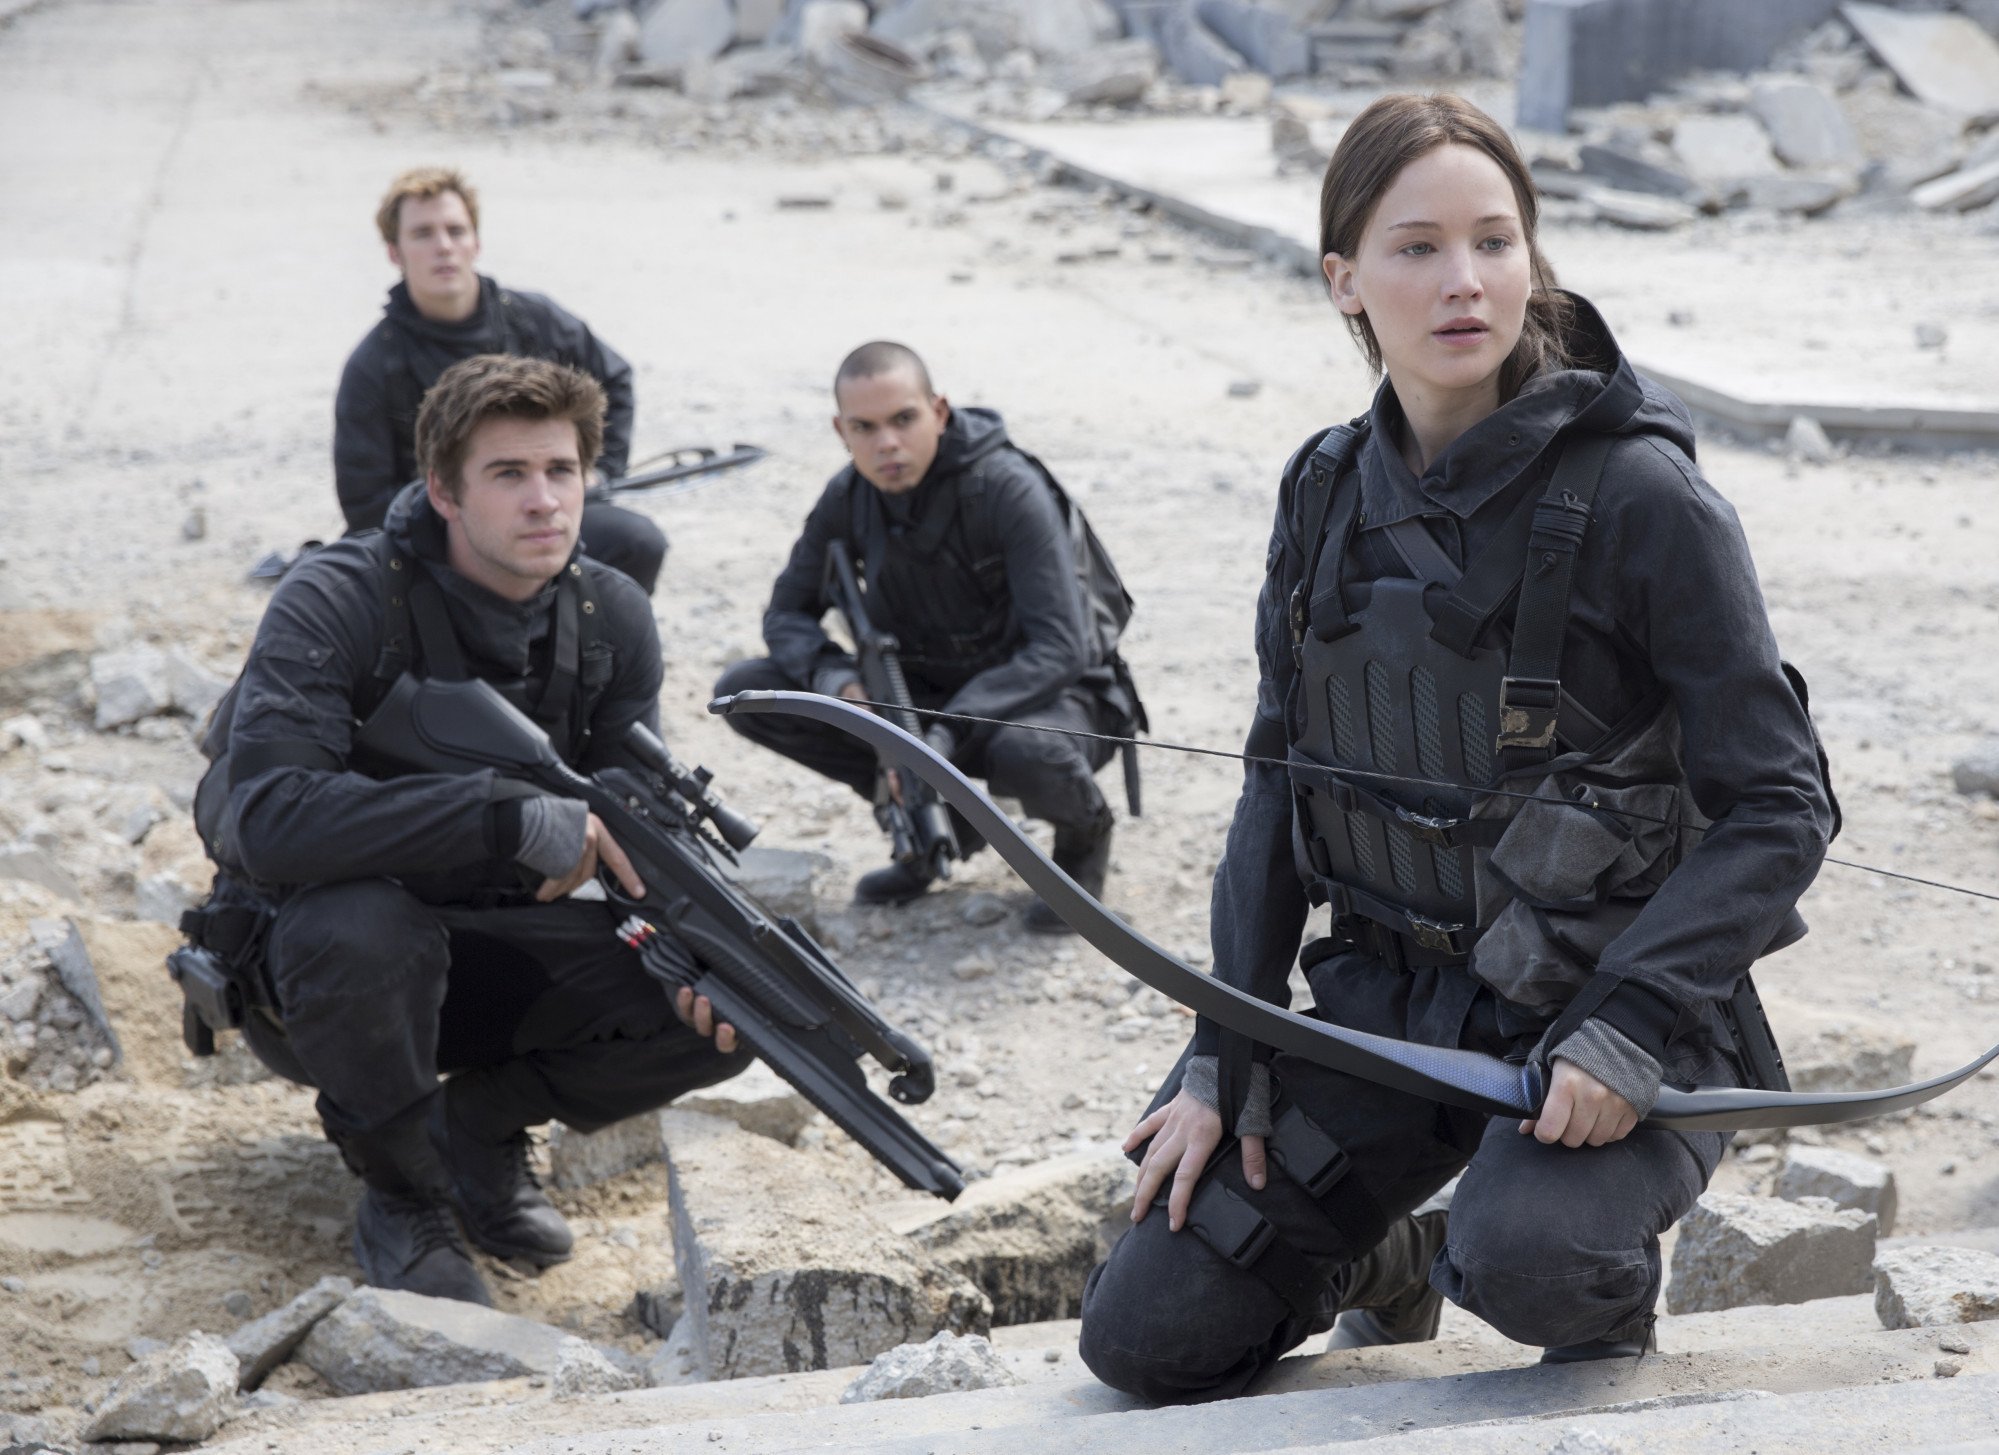 Rachel Zegler Net Worth: How 'Hunger Games' Star Makes Money